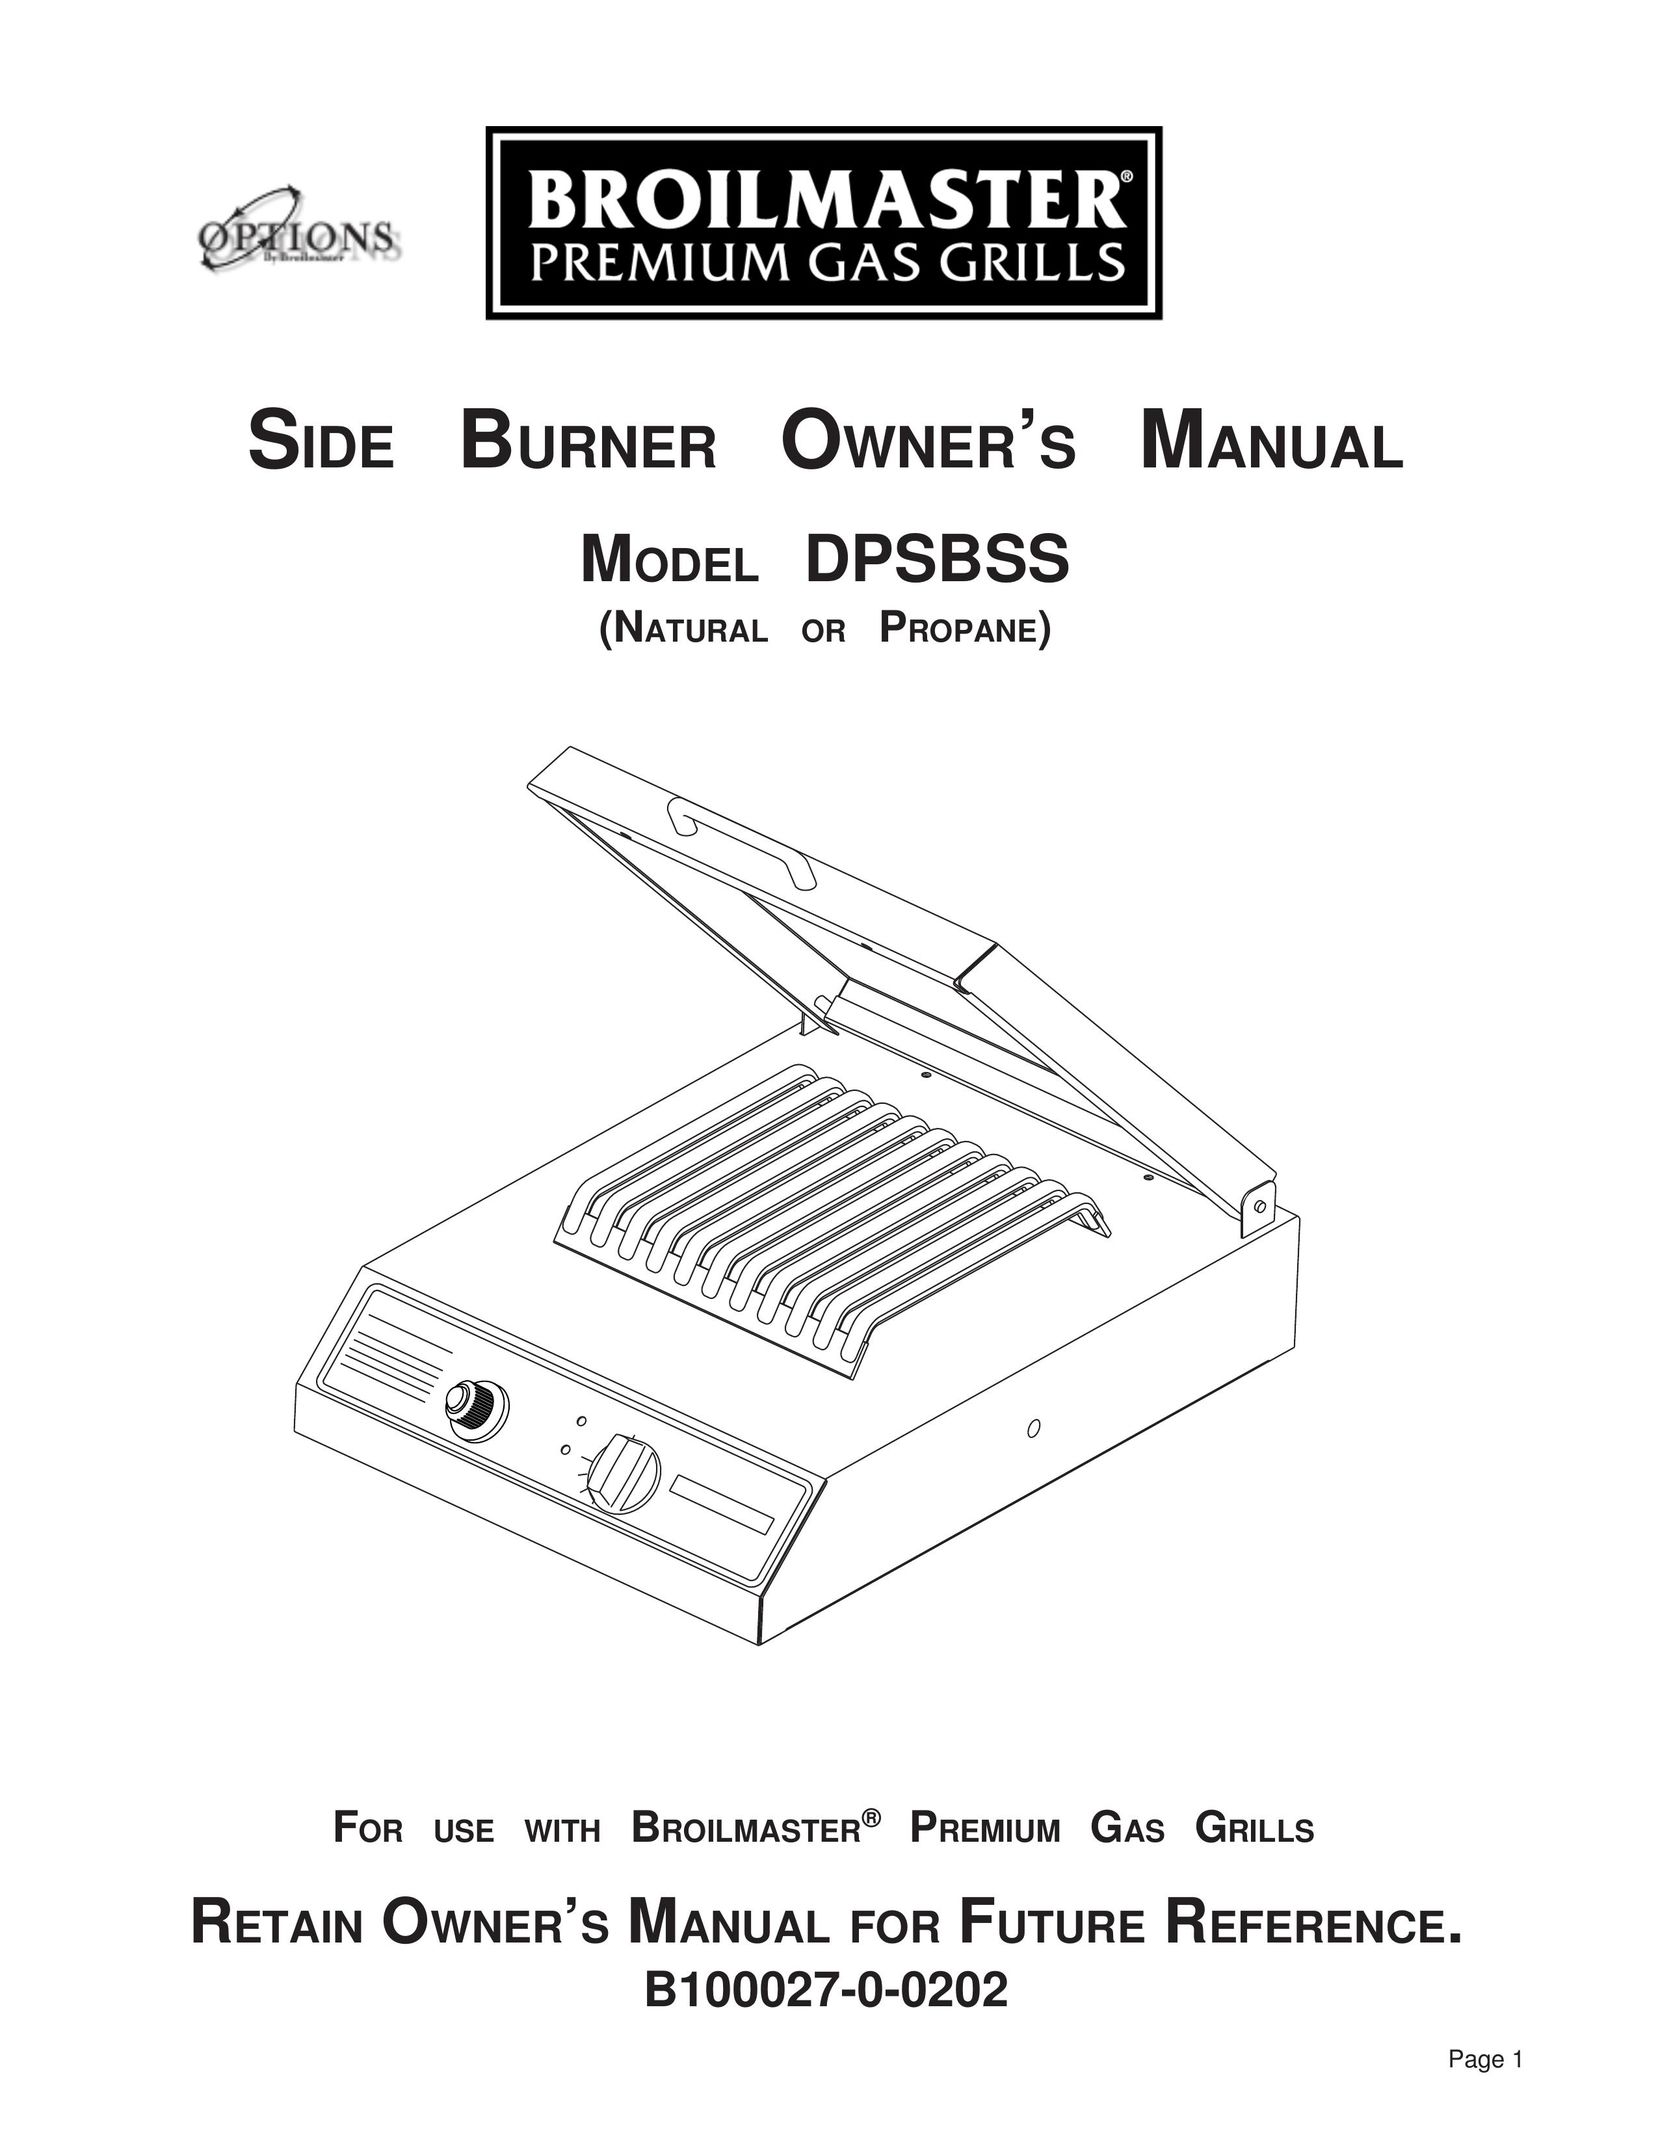 Broilmaster DPSBSS Burner User Manual